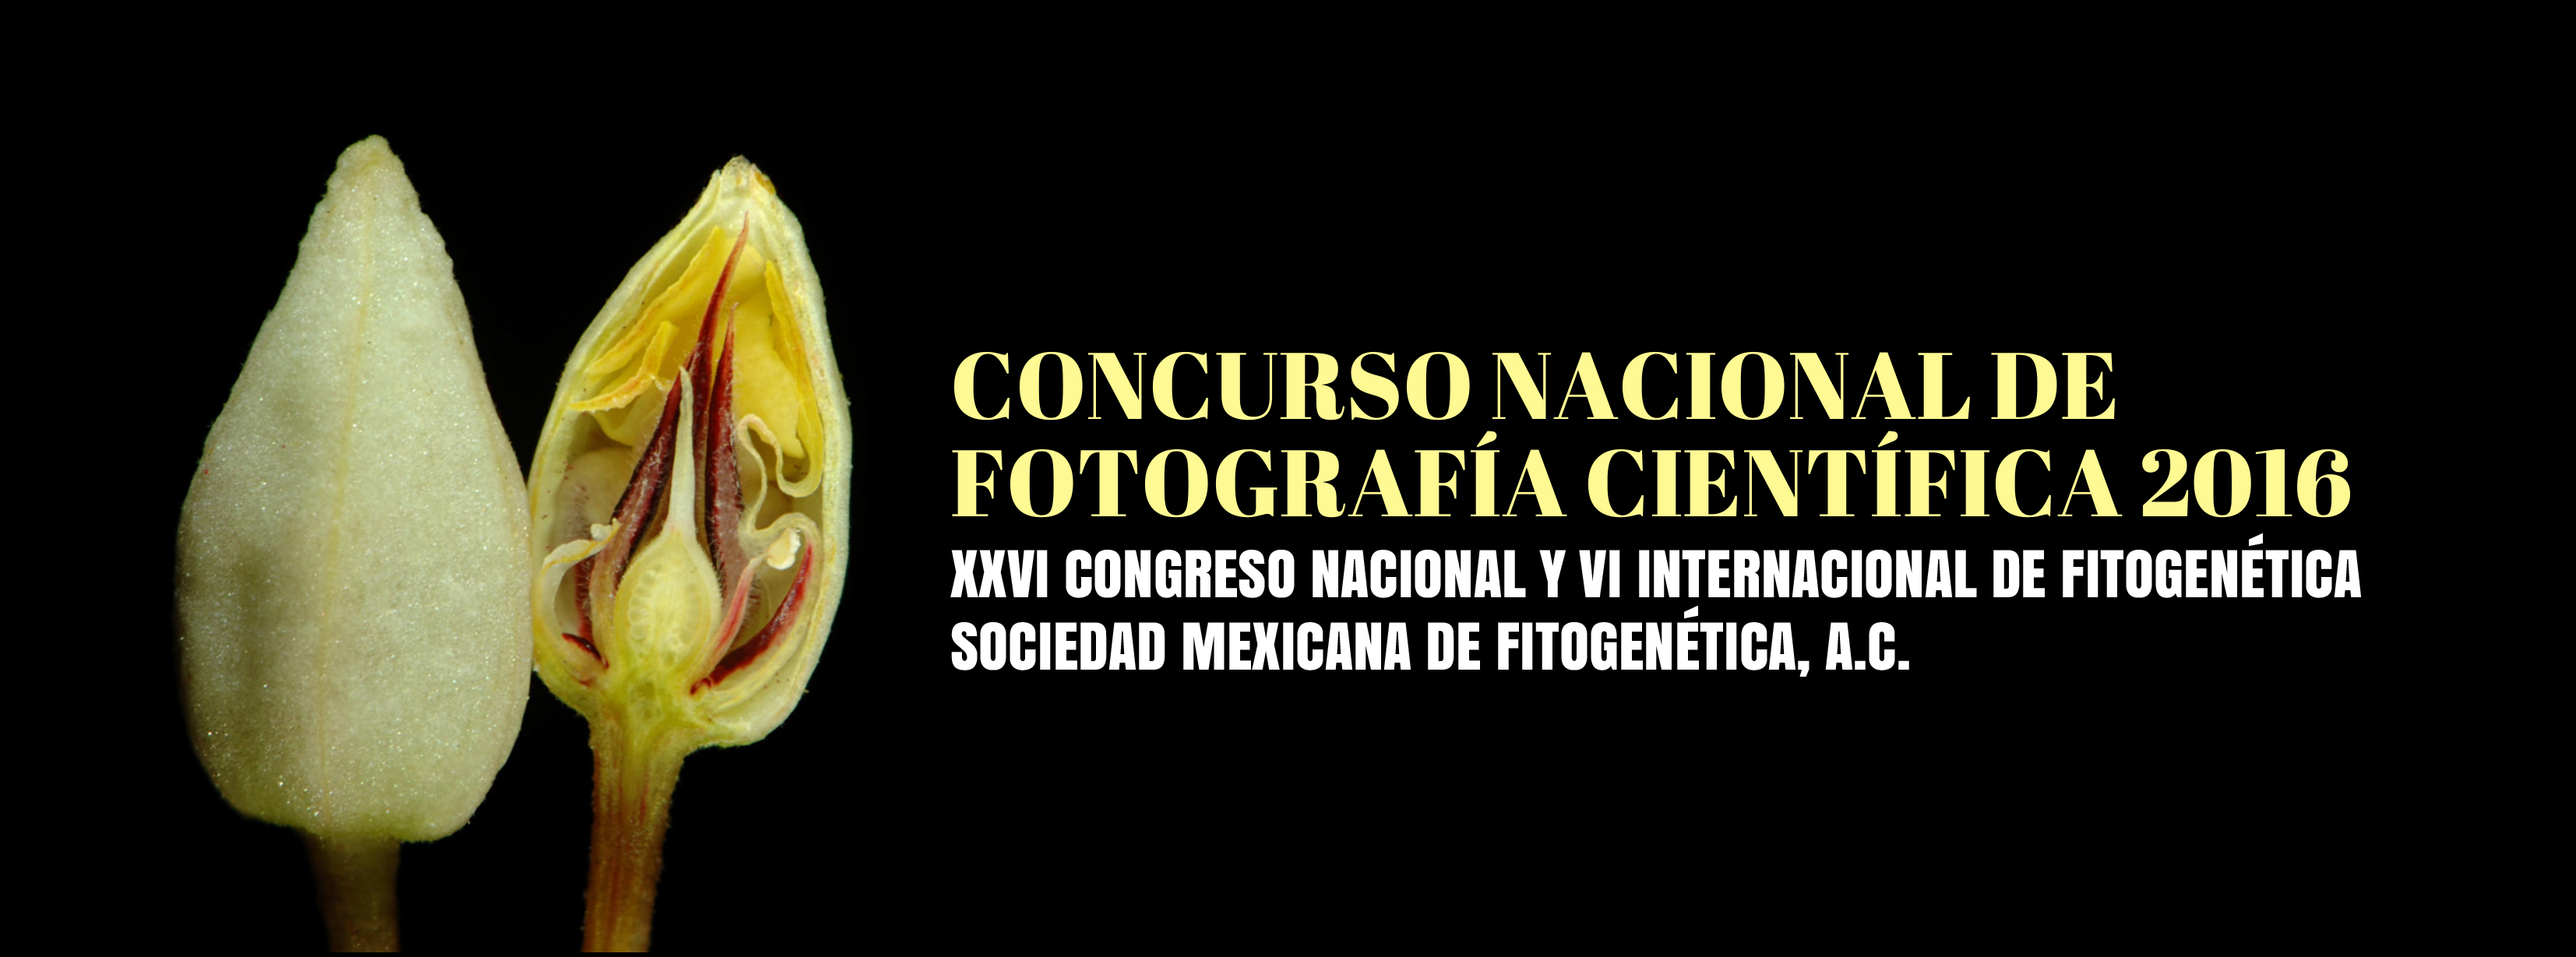 CONCURSO NACIONAL DE FOTOGRAFÍA CIENTÍFICA 2016